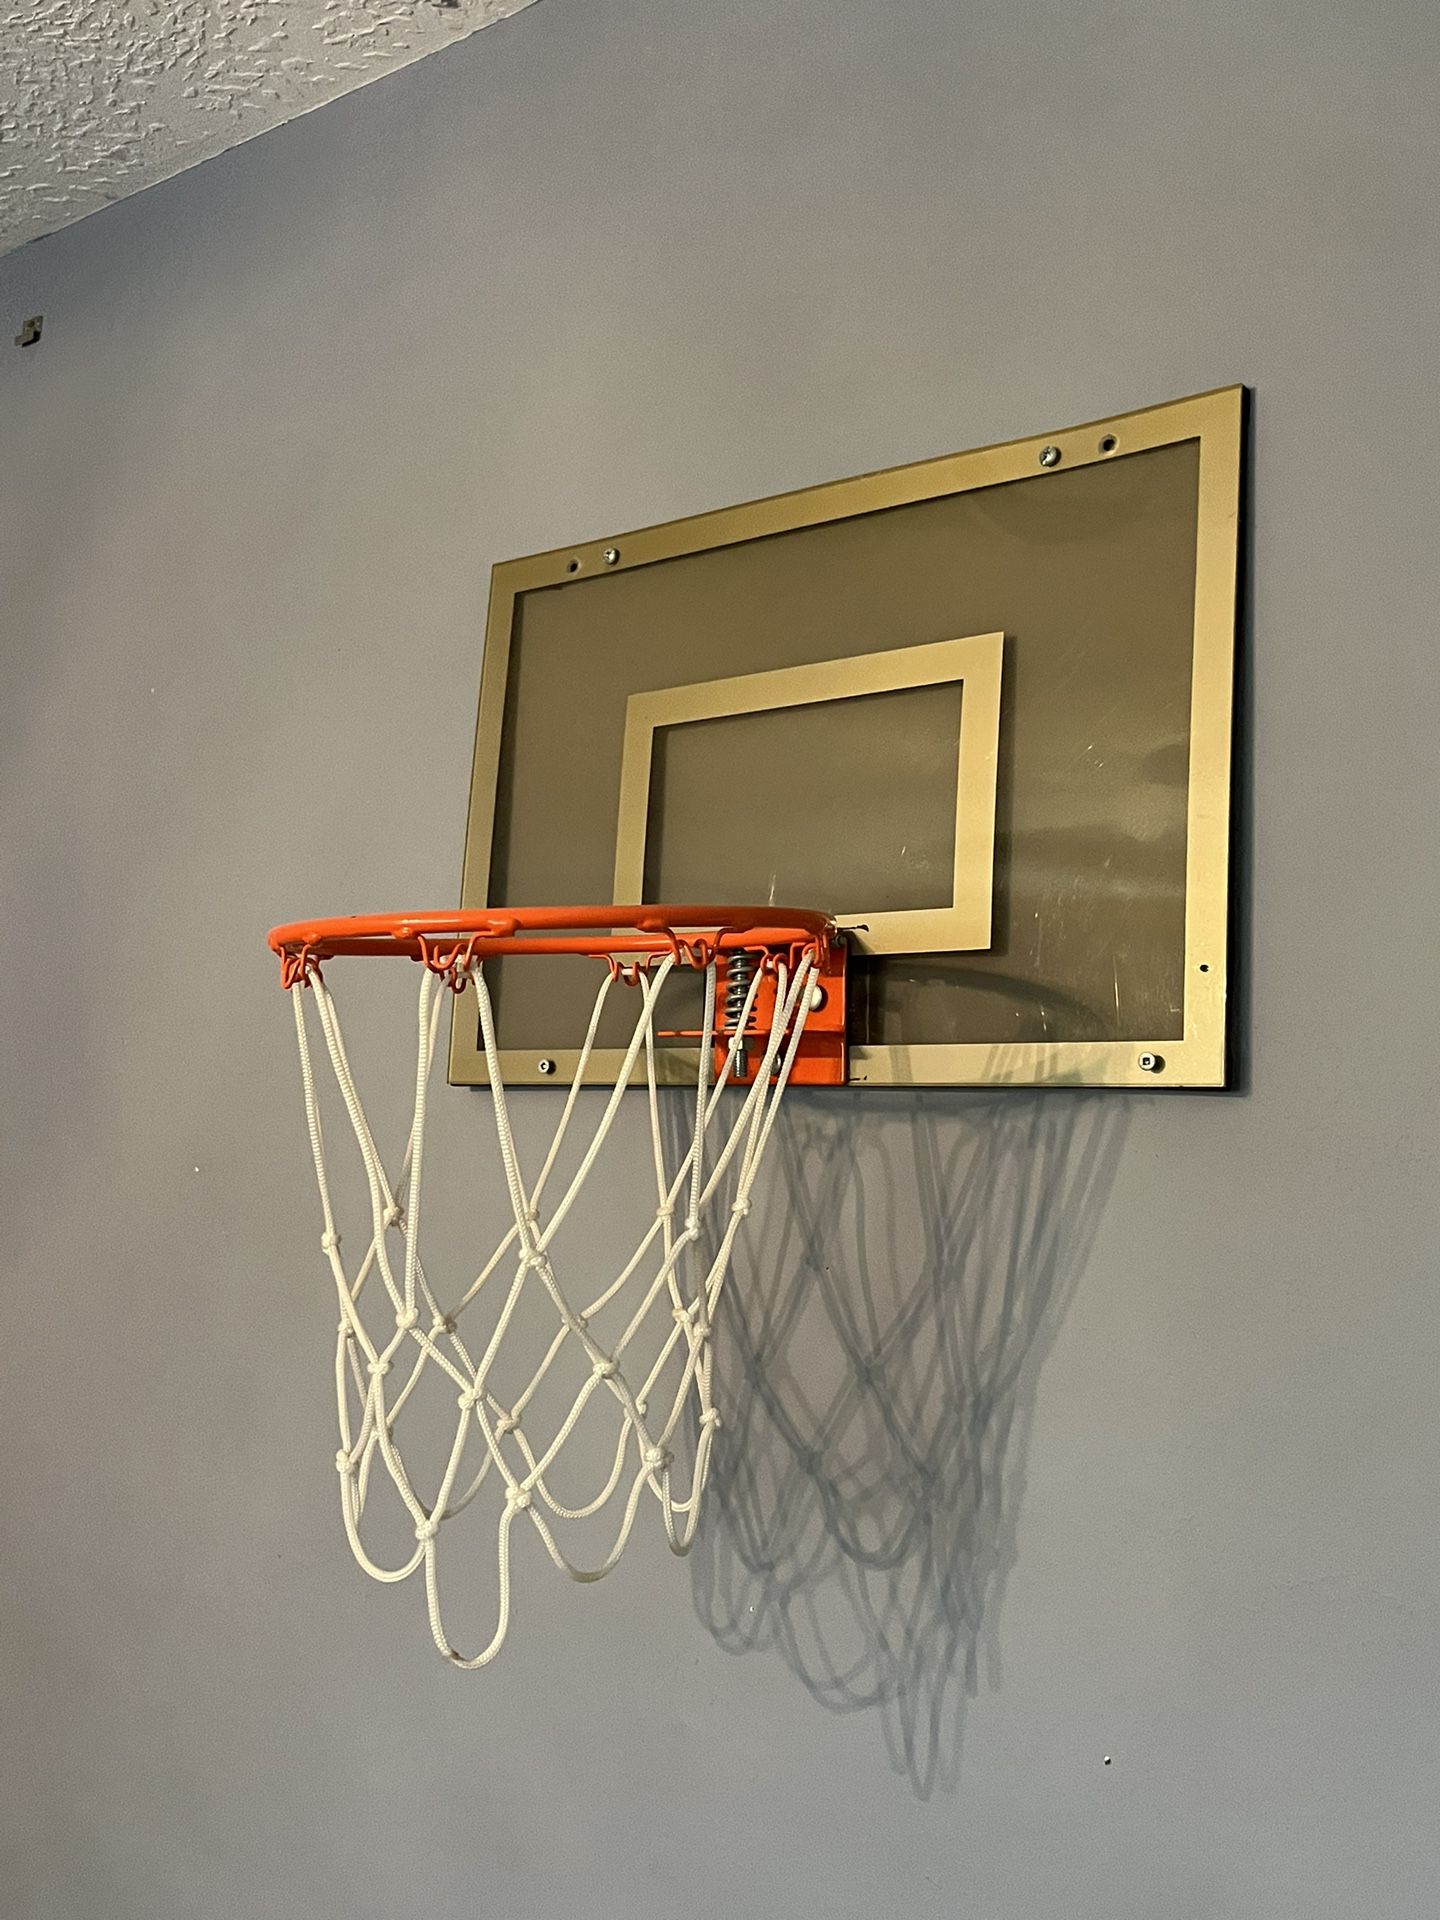 Indoor Mini Basketball Hoop Kids Adults Office Bathroom Bedroom Hang Wall  Door Pole for Sale in Whittier, CA - OfferUp